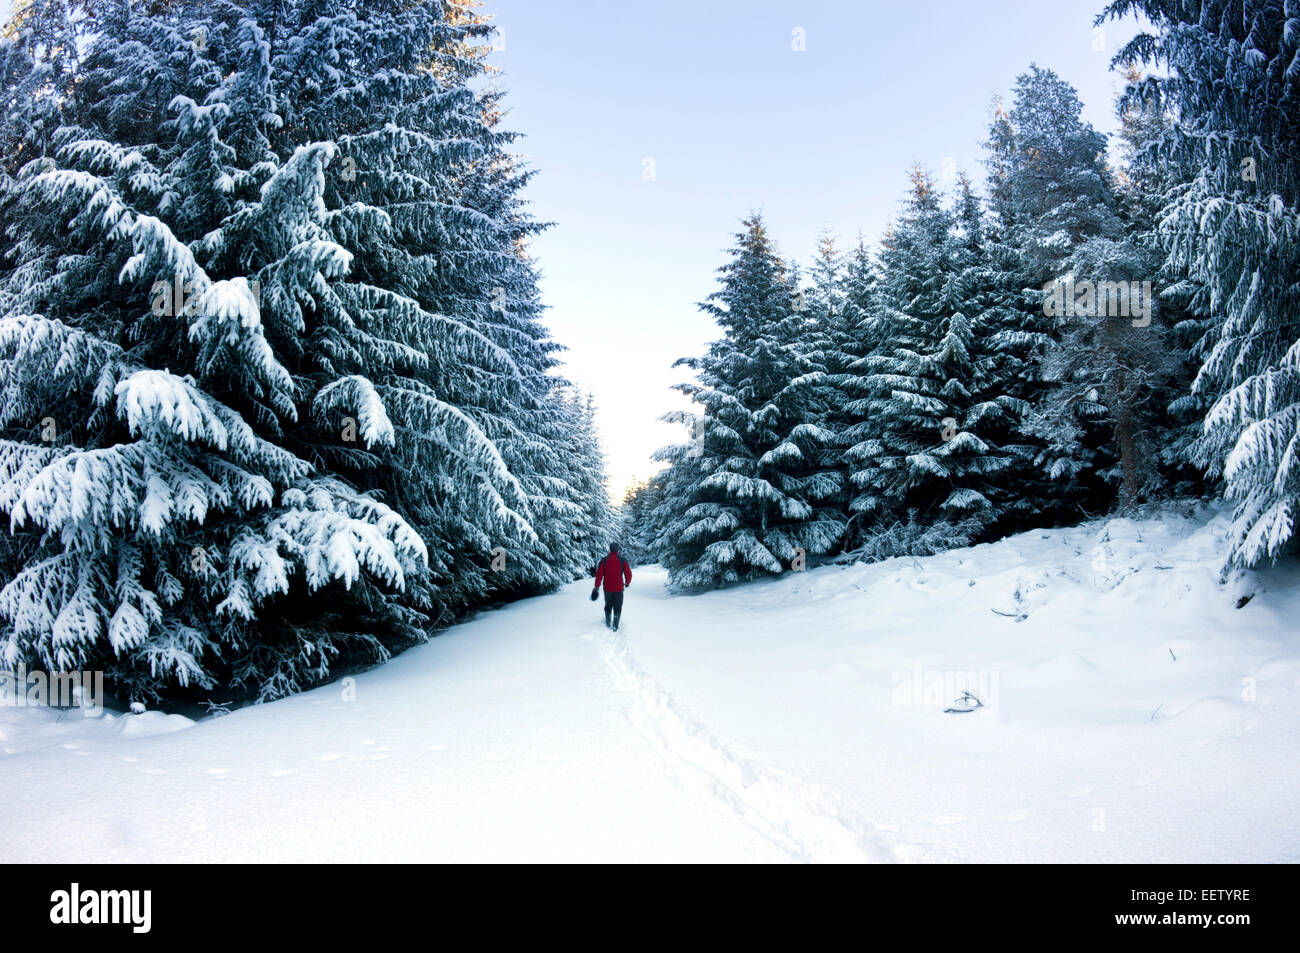 Une famille walker treks le long d'un chemin rempli de neige à travers une plantation de pins après une averse de neige pendant la nuit Banque D'Images